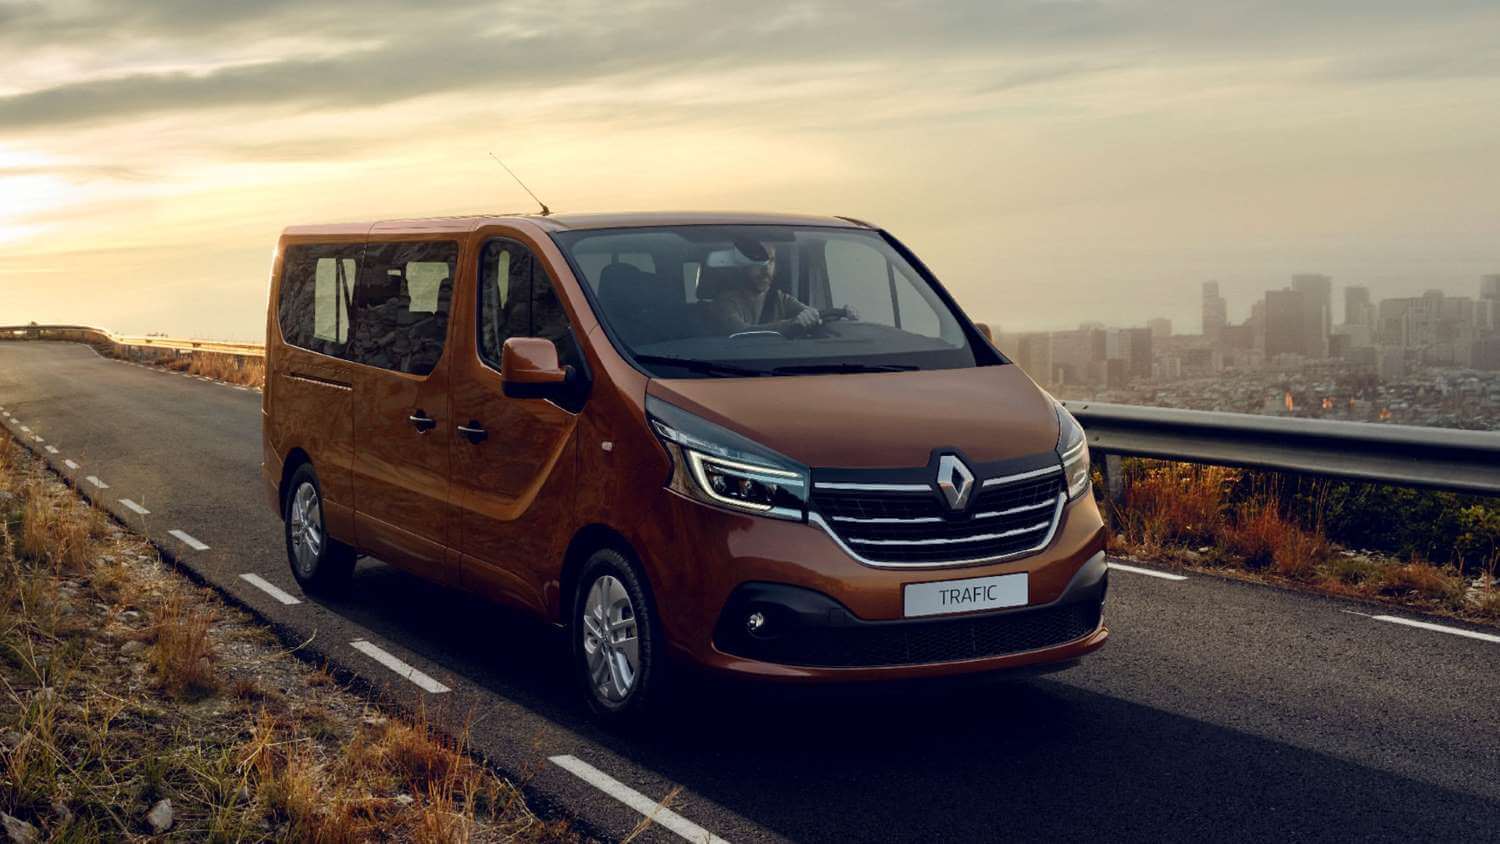 Renault Trafic a prueba: Descubre todo su potencial